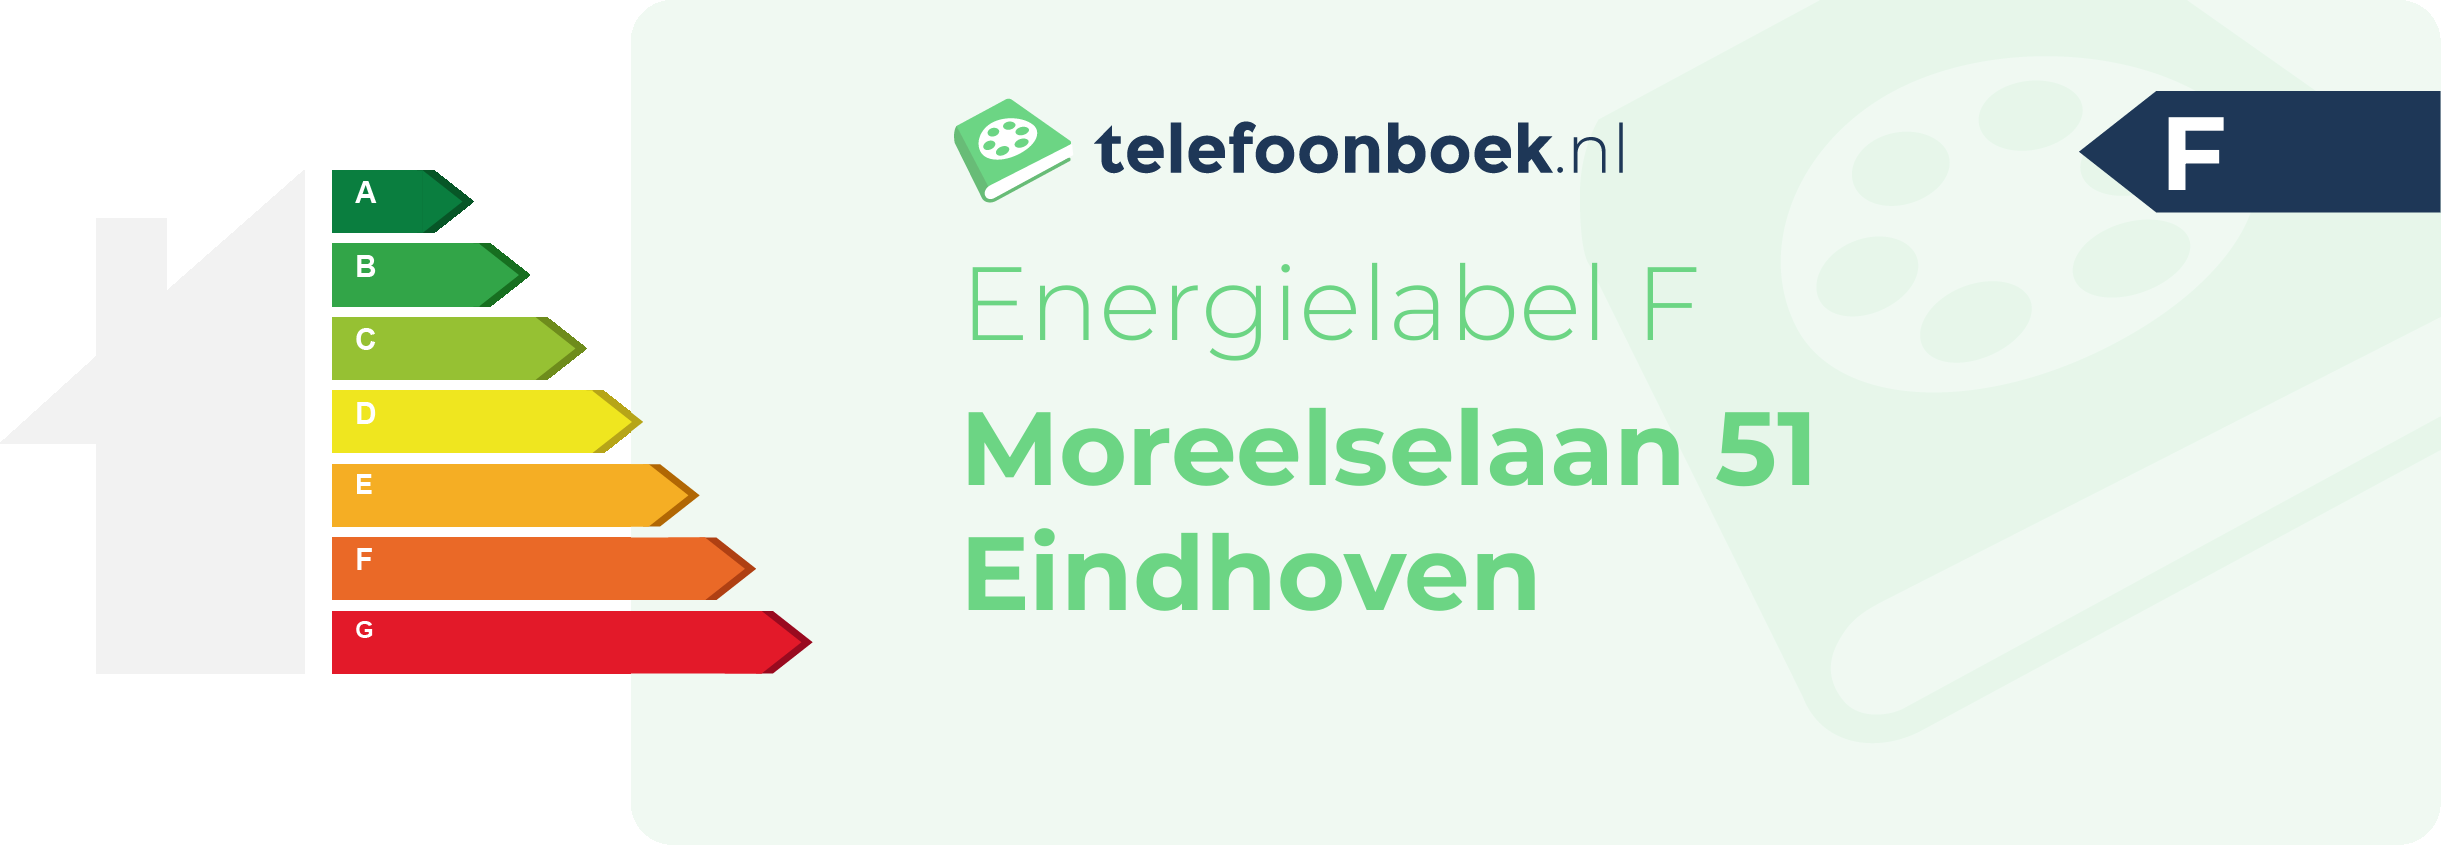 Energielabel Moreelselaan 51 Eindhoven